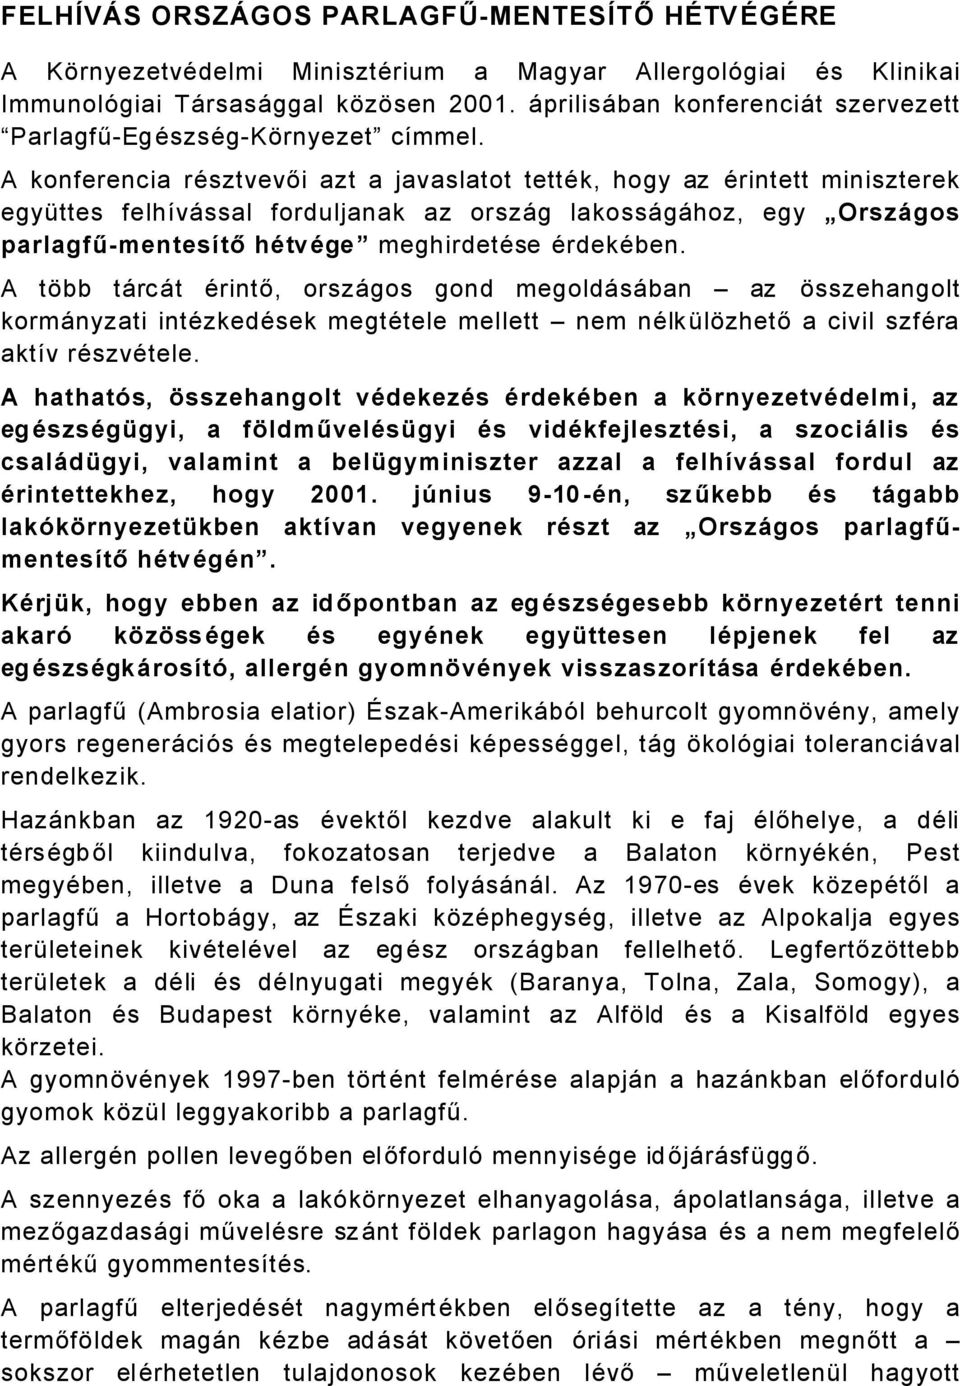 A konferencia räsztvevői azt a javaslatot tettäk, hogy az Ärintett miniszterek egyàttes felhñvåssal forduljanak az orszåg lakossågåhoz, egy OrszÖgos parlagfű-mentesåtő hätväge meghirdetäse ÄrdekÄben.